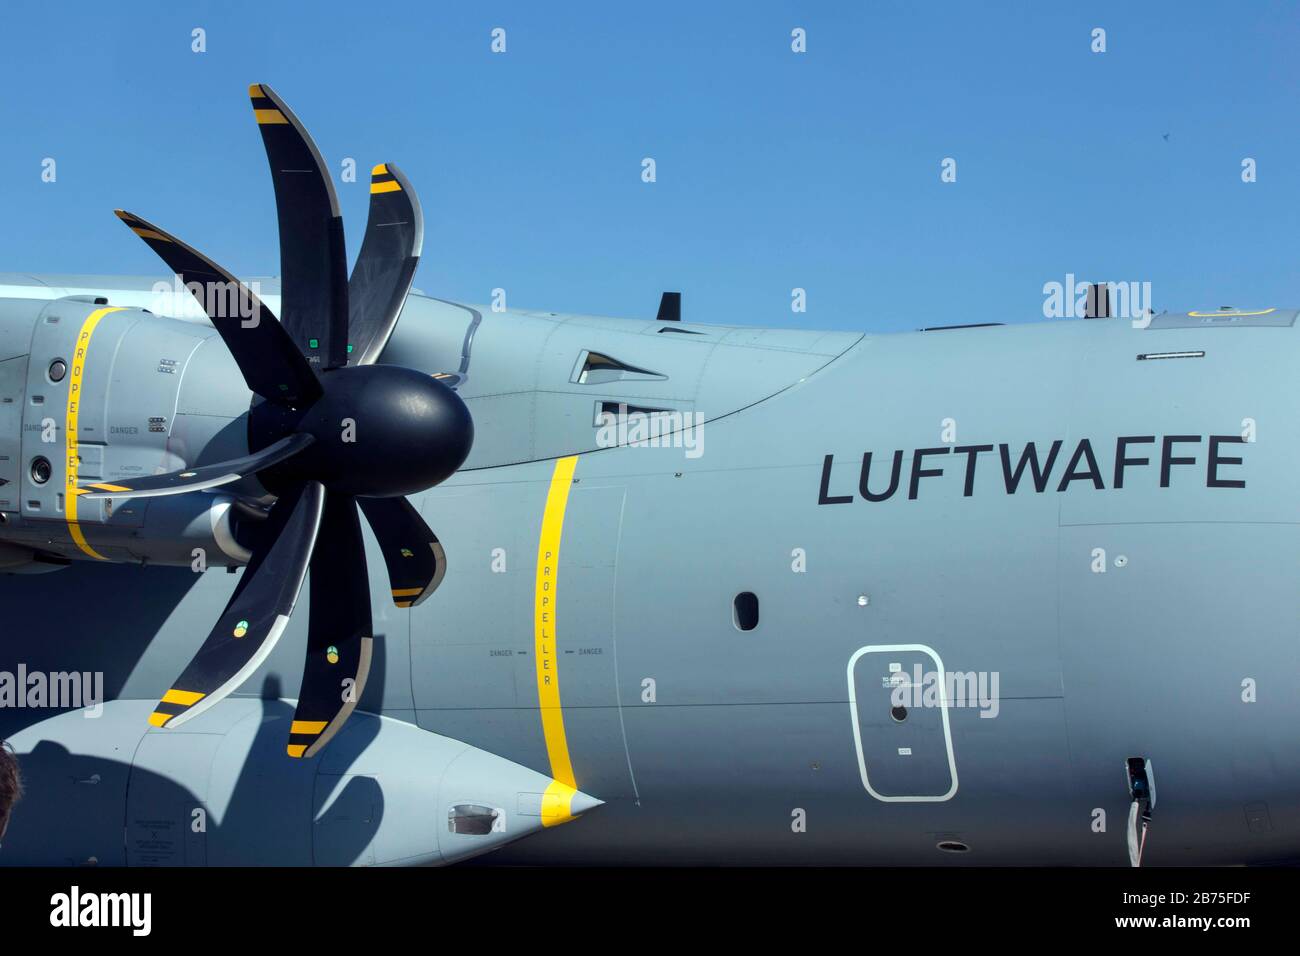 Vue sur un Airbus A400M de l'armée de l'air dans la partie militaire de l'aéroport de Berlin Tegel. [traduction automatique] Banque D'Images